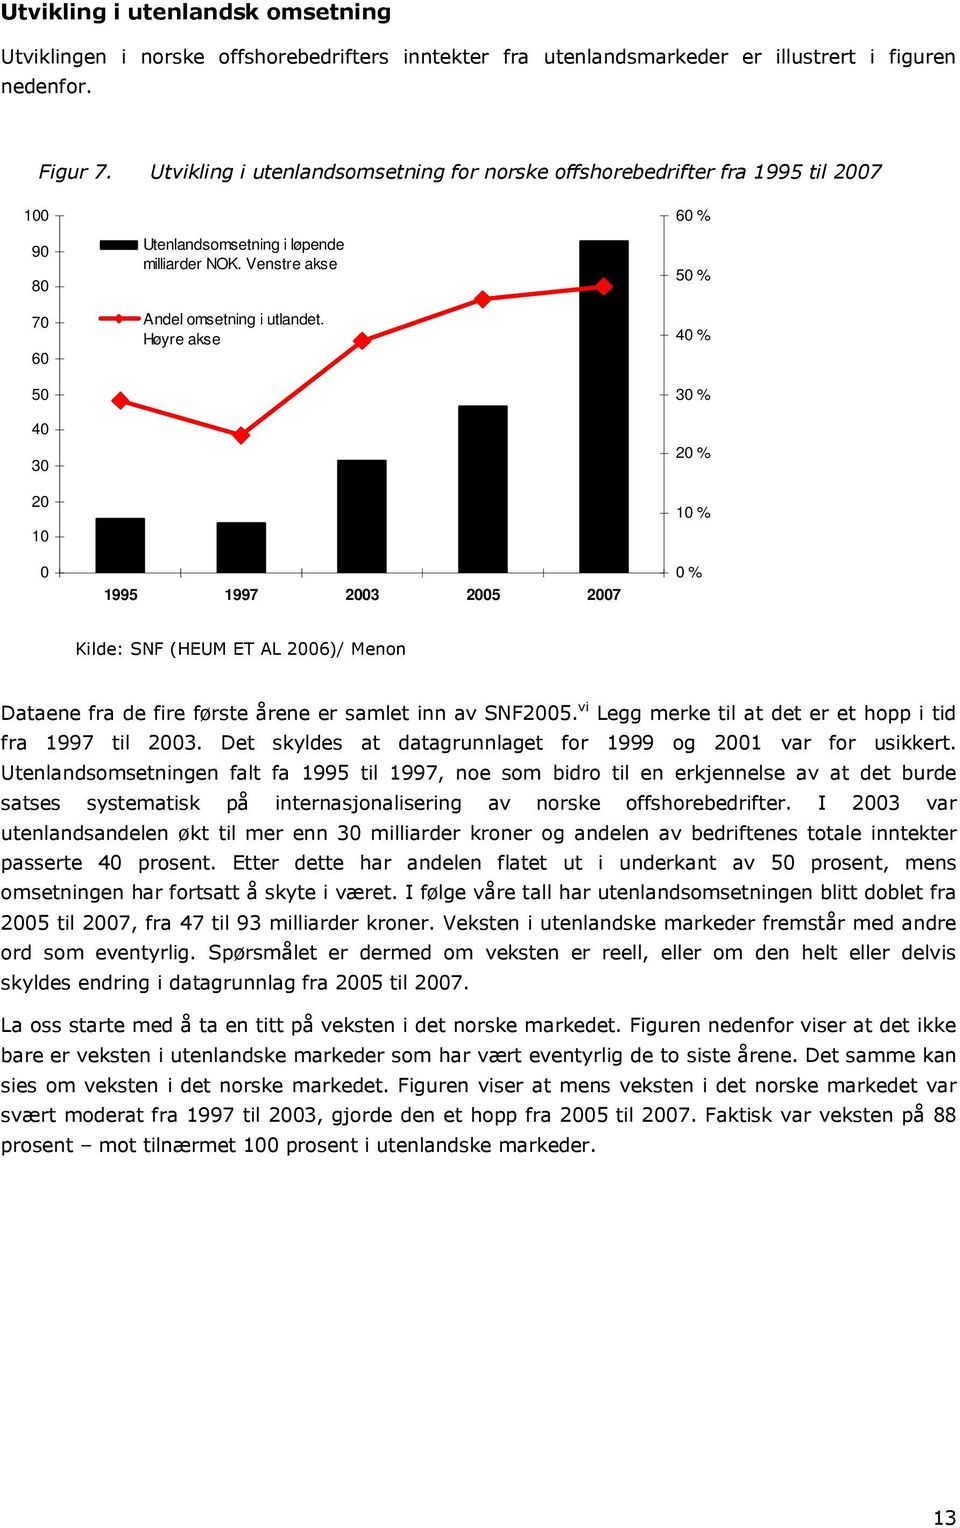 Høyre akse 1995 1997 2003 2005 2007 60 % 50 % 40 % 30 % 20 % 10 % 0 % Kilde: SNF (HEUM ET AL 2006)/ Menon Dataene fra de fire første årene er samlet inn av SNF2005.